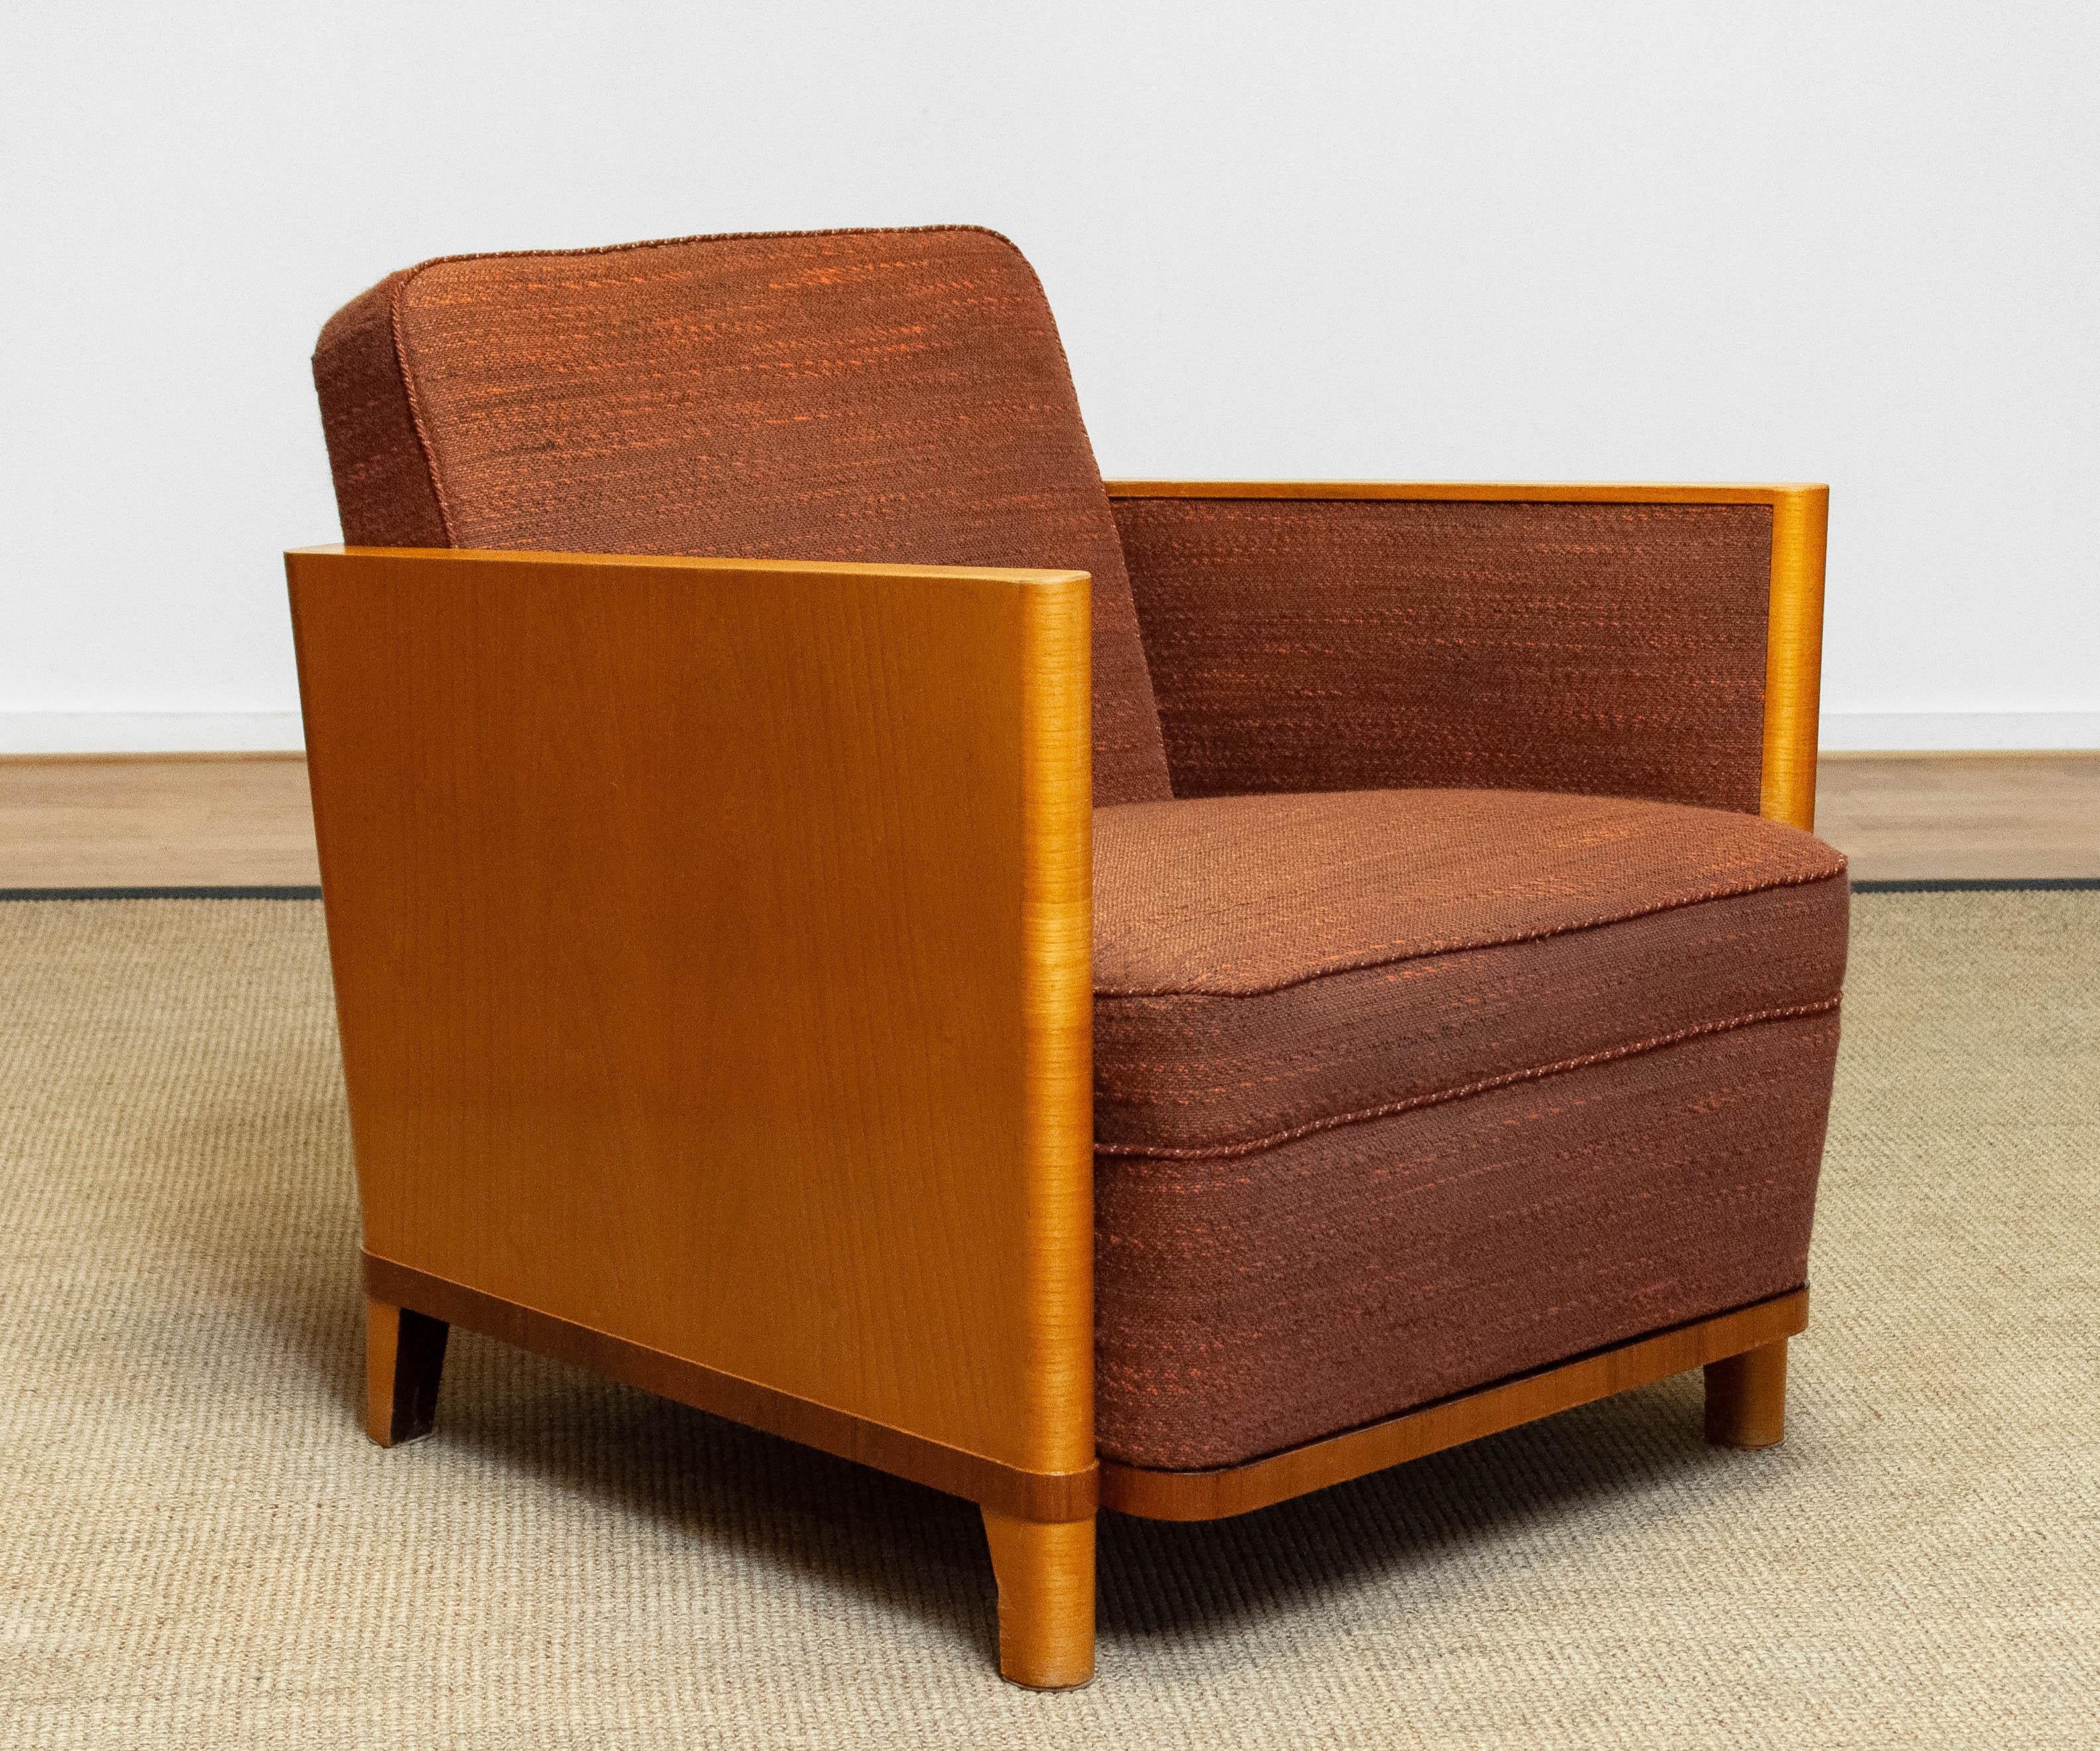 Schöner und seltener Art Deco Club-/Lounge-Sessel mit Ulmenfurniergestell, gepolstert mit originalem dunkelbraunem Melle-Stoff, der noch in sehr gutem und bequemem Zustand ist. Auch die Federn und Bindungen sind alle in perfektem Zustand.
Dieser